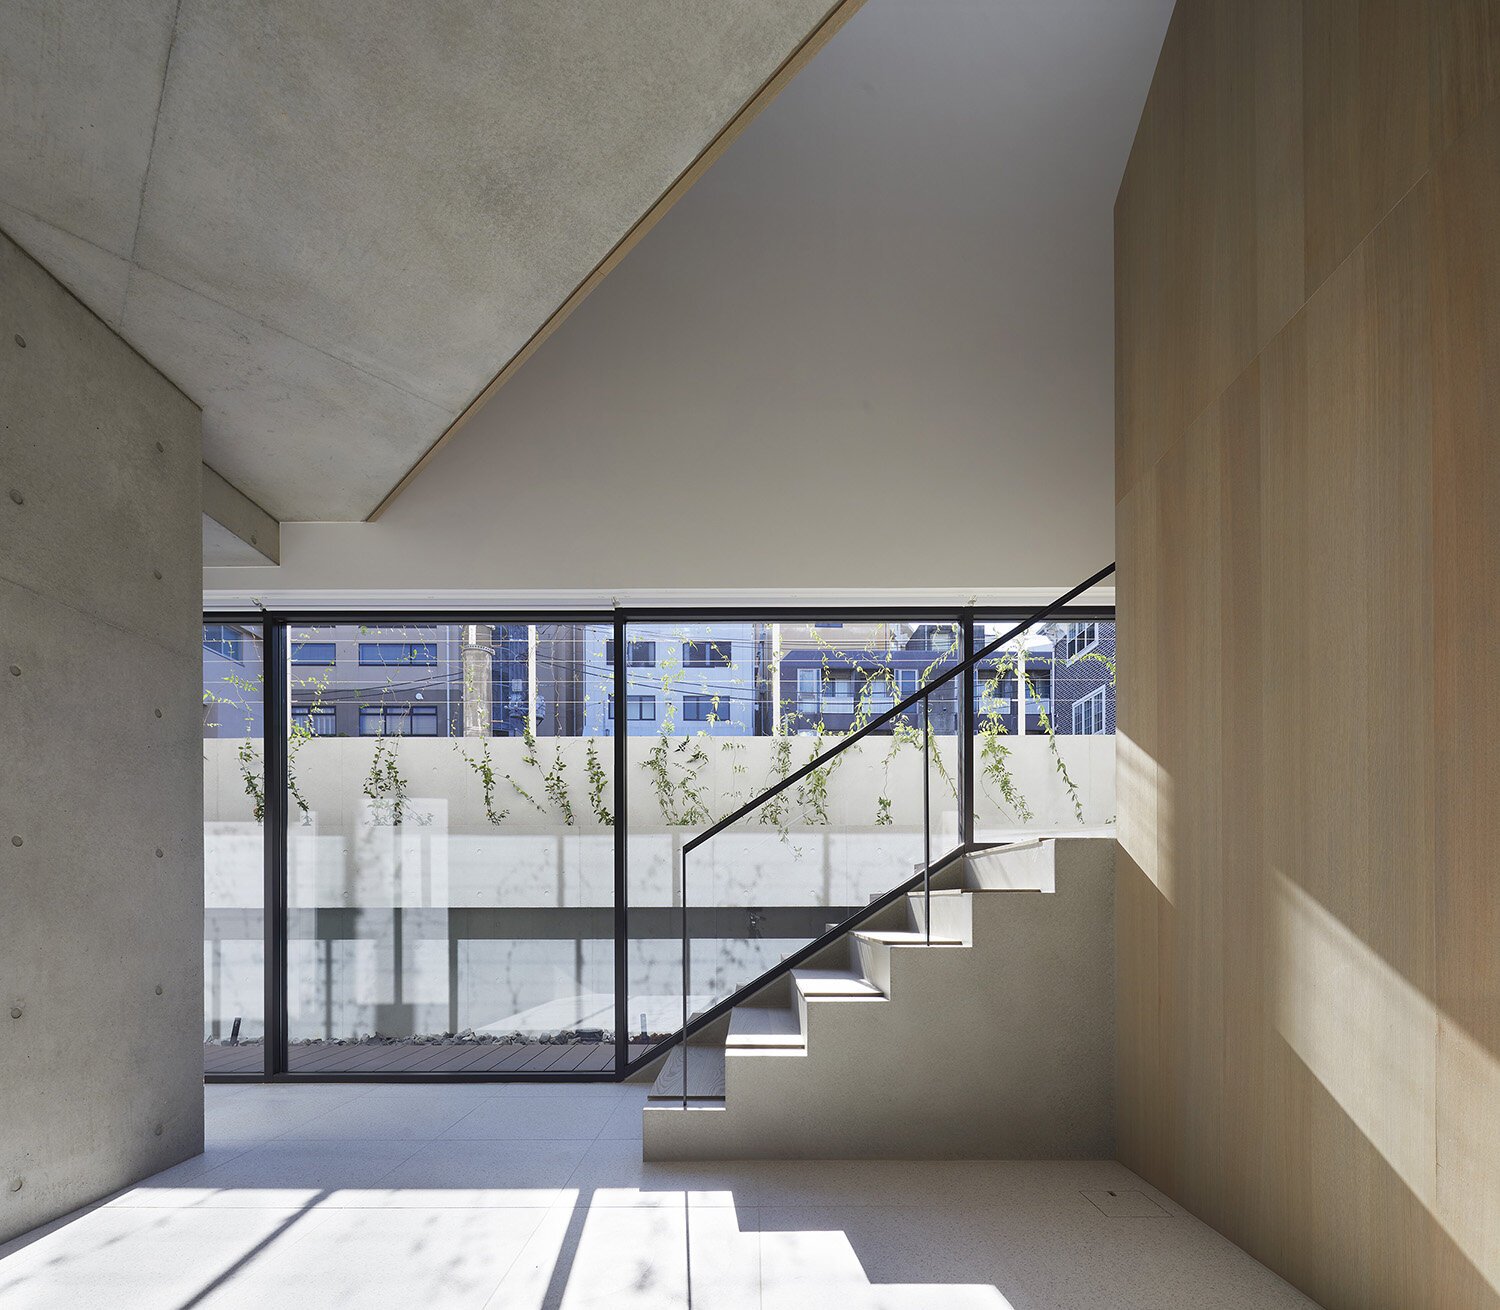  建築家 sinatoシナトの大野力が設計した住宅Shoto Sのインテリアデザイン 